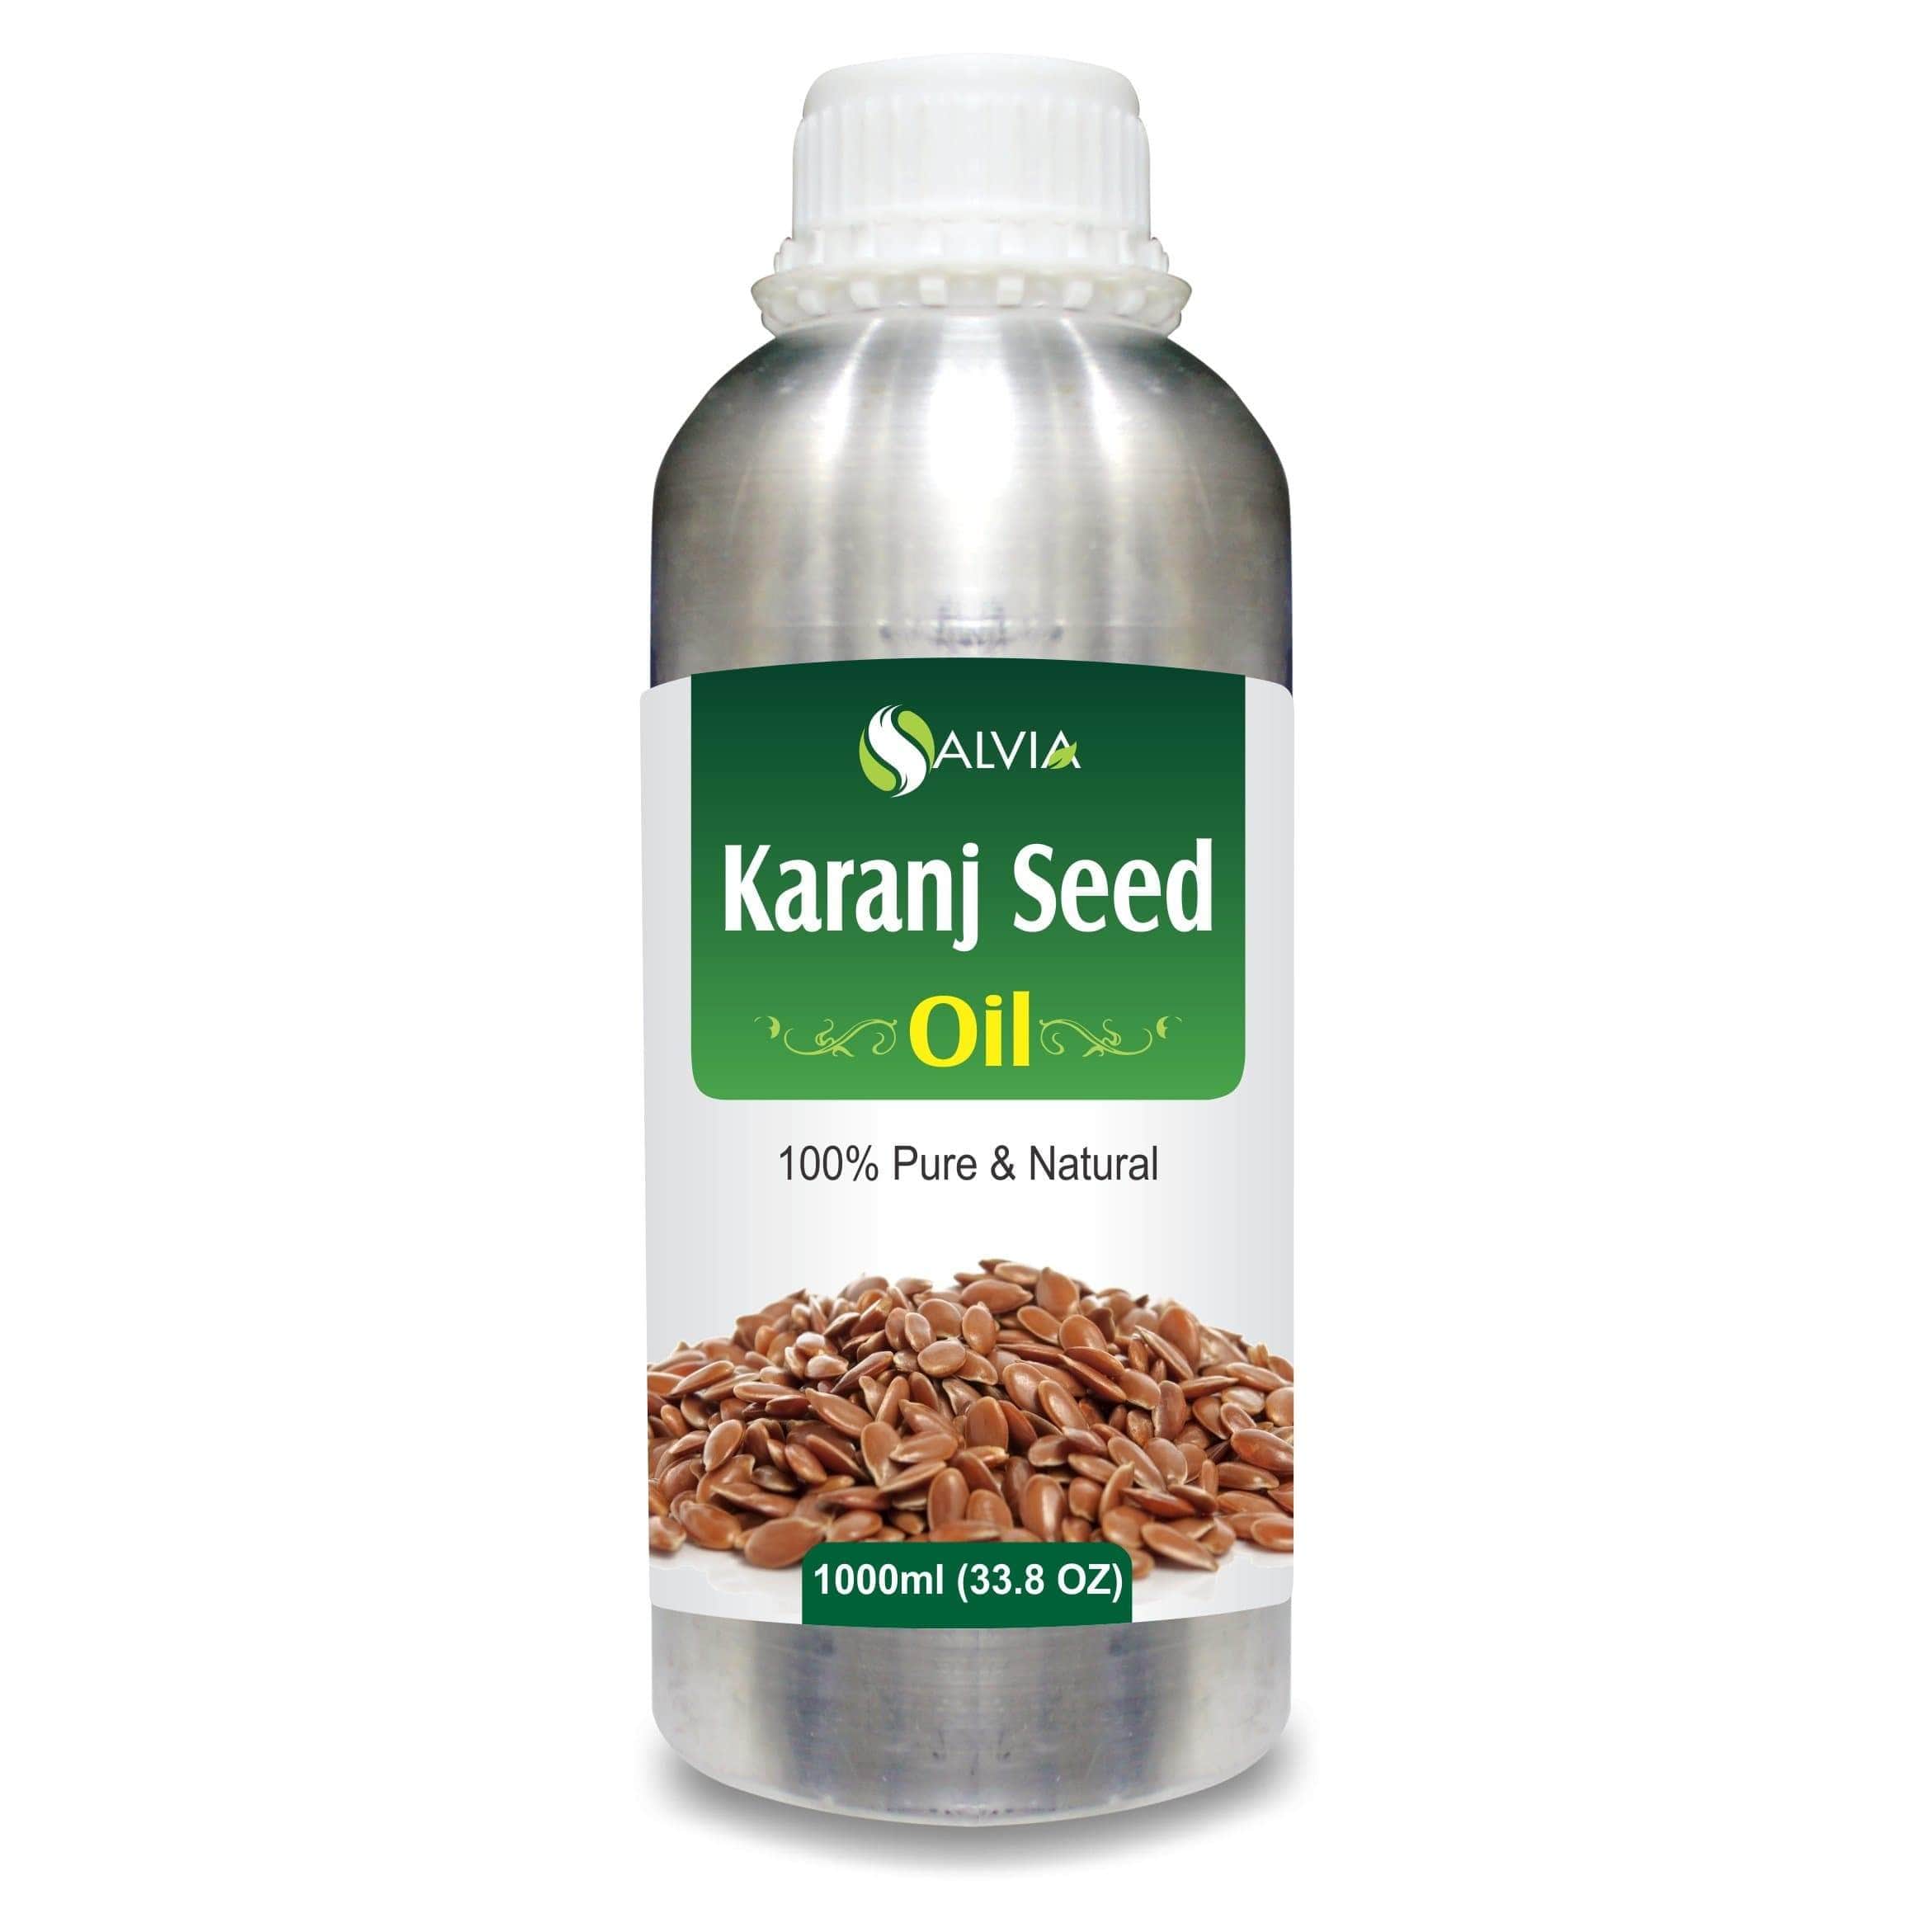 KaranjSeed oil for skin